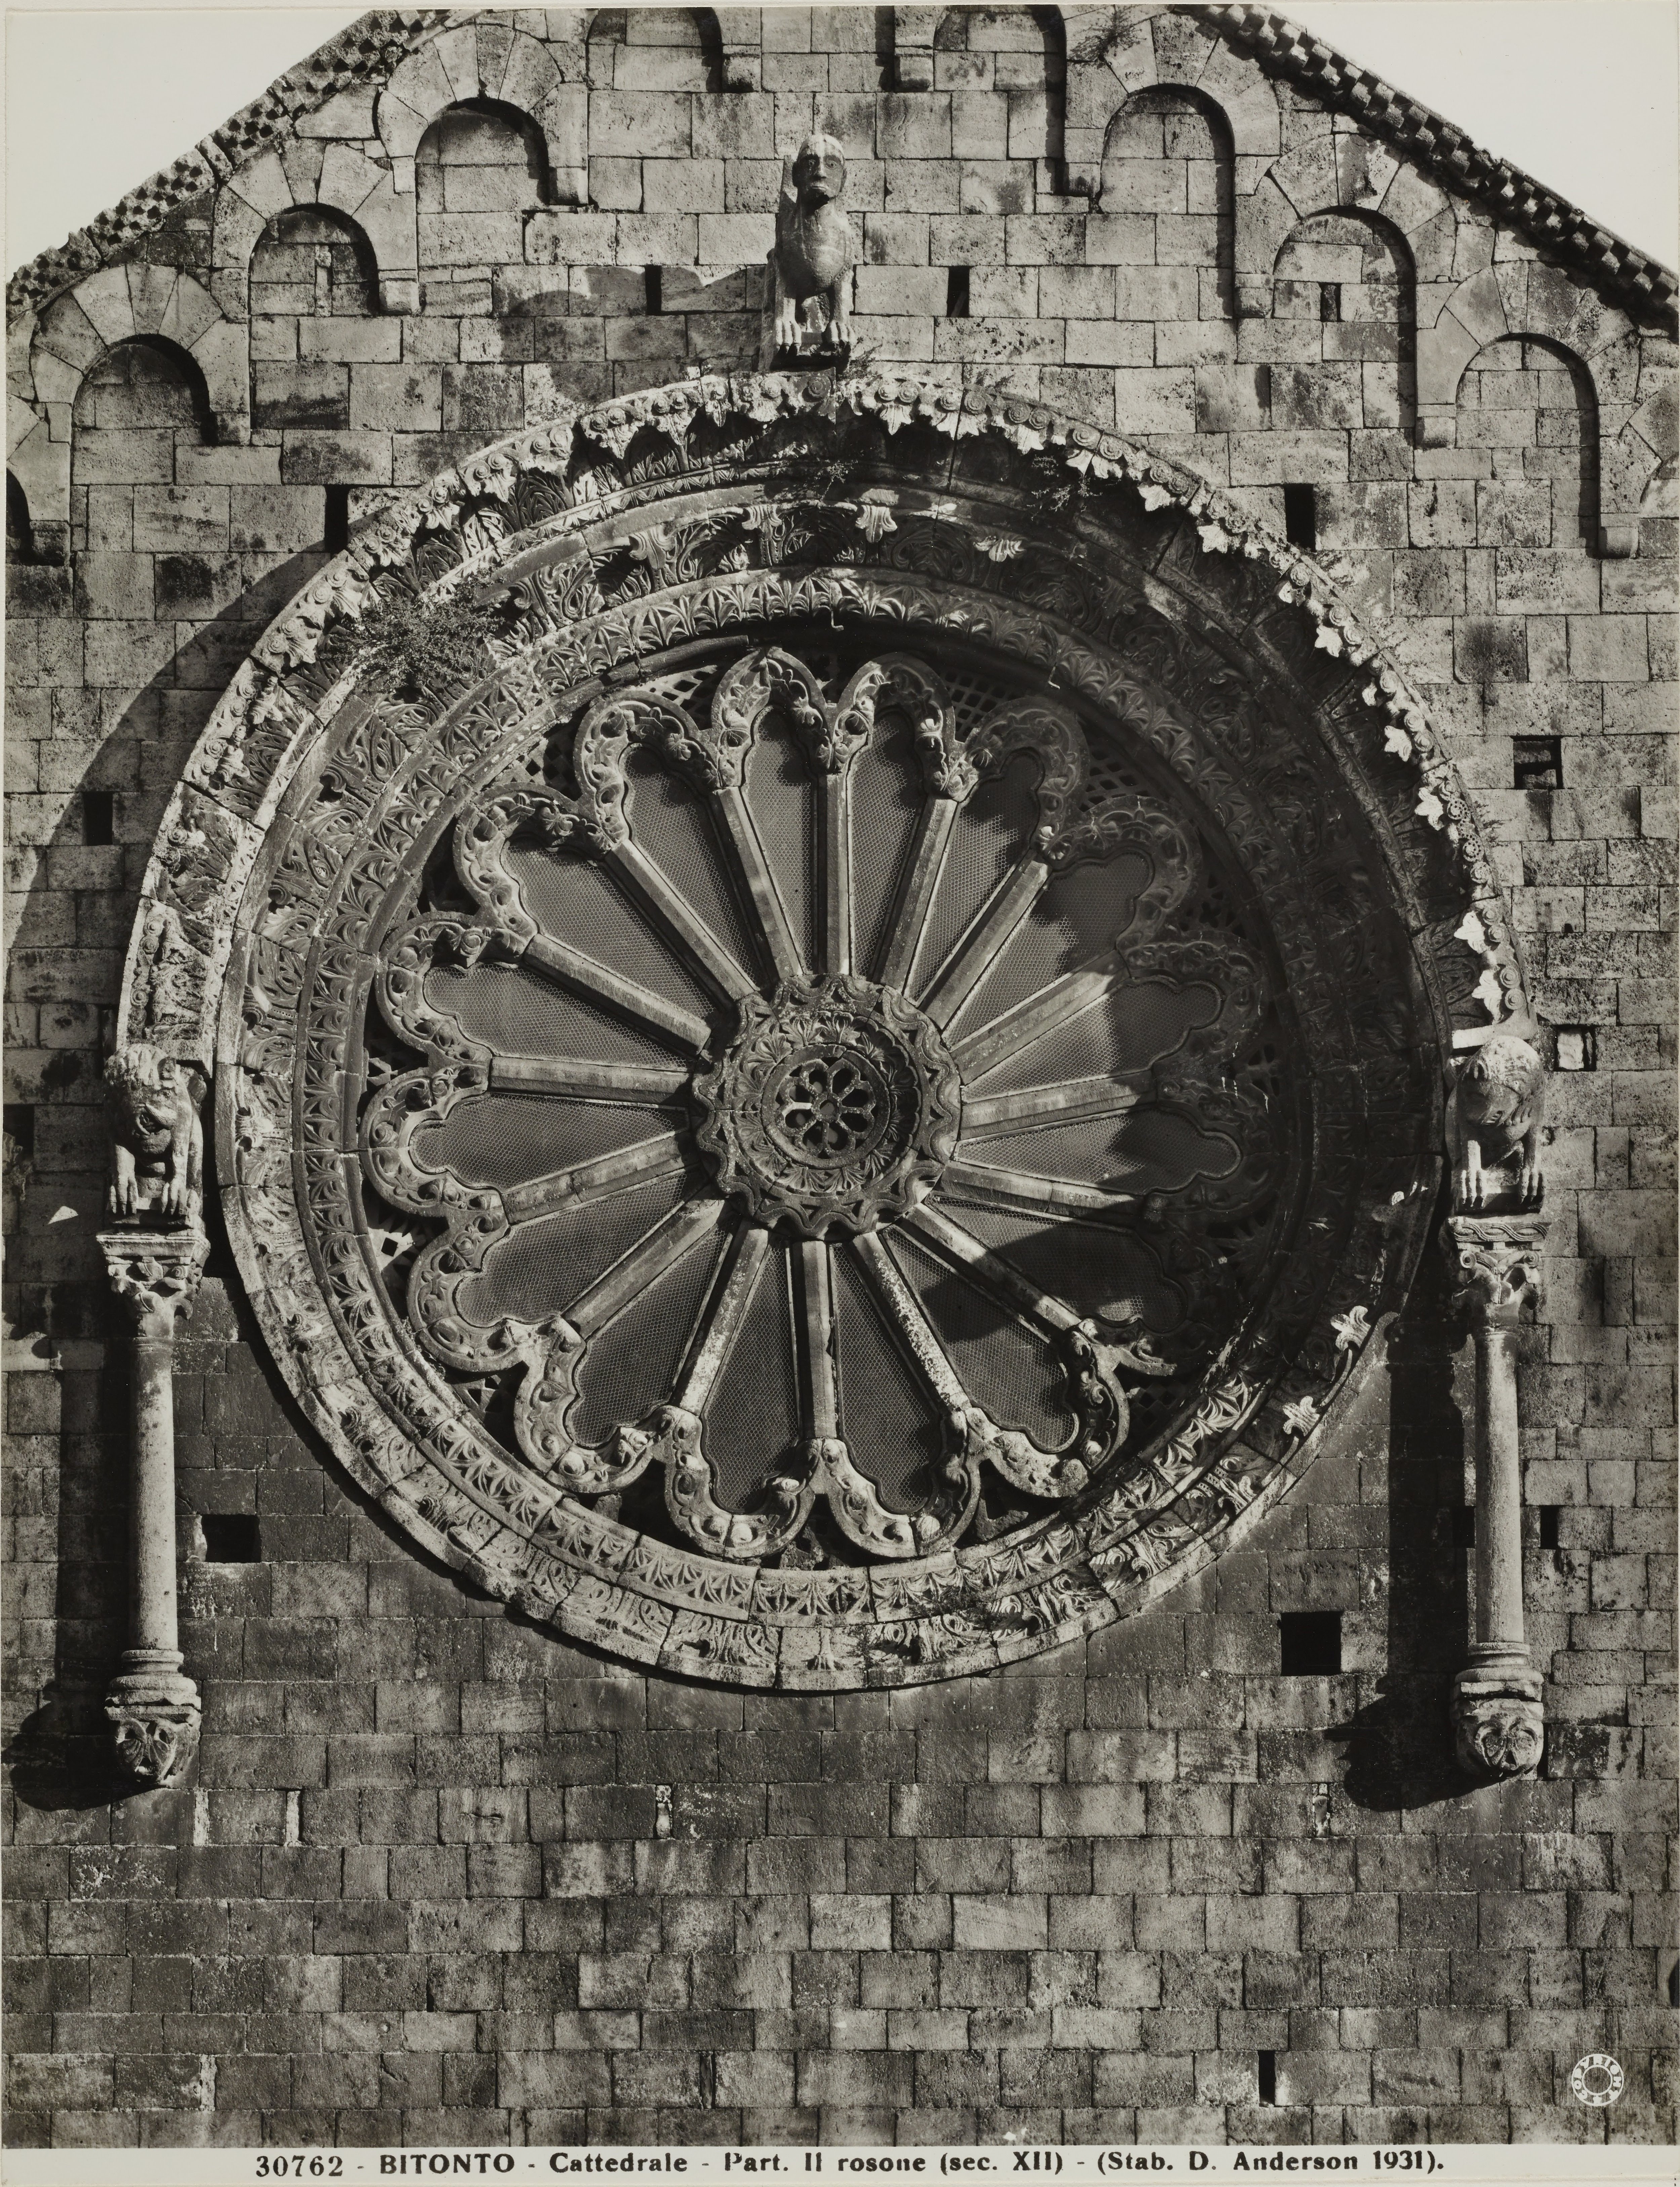 Fotografo non identificato, Bitonto - Cattedrale di S. Valentino, rosone, 1931 ante, gelatina ai sali d'argento/carta, MPI137826